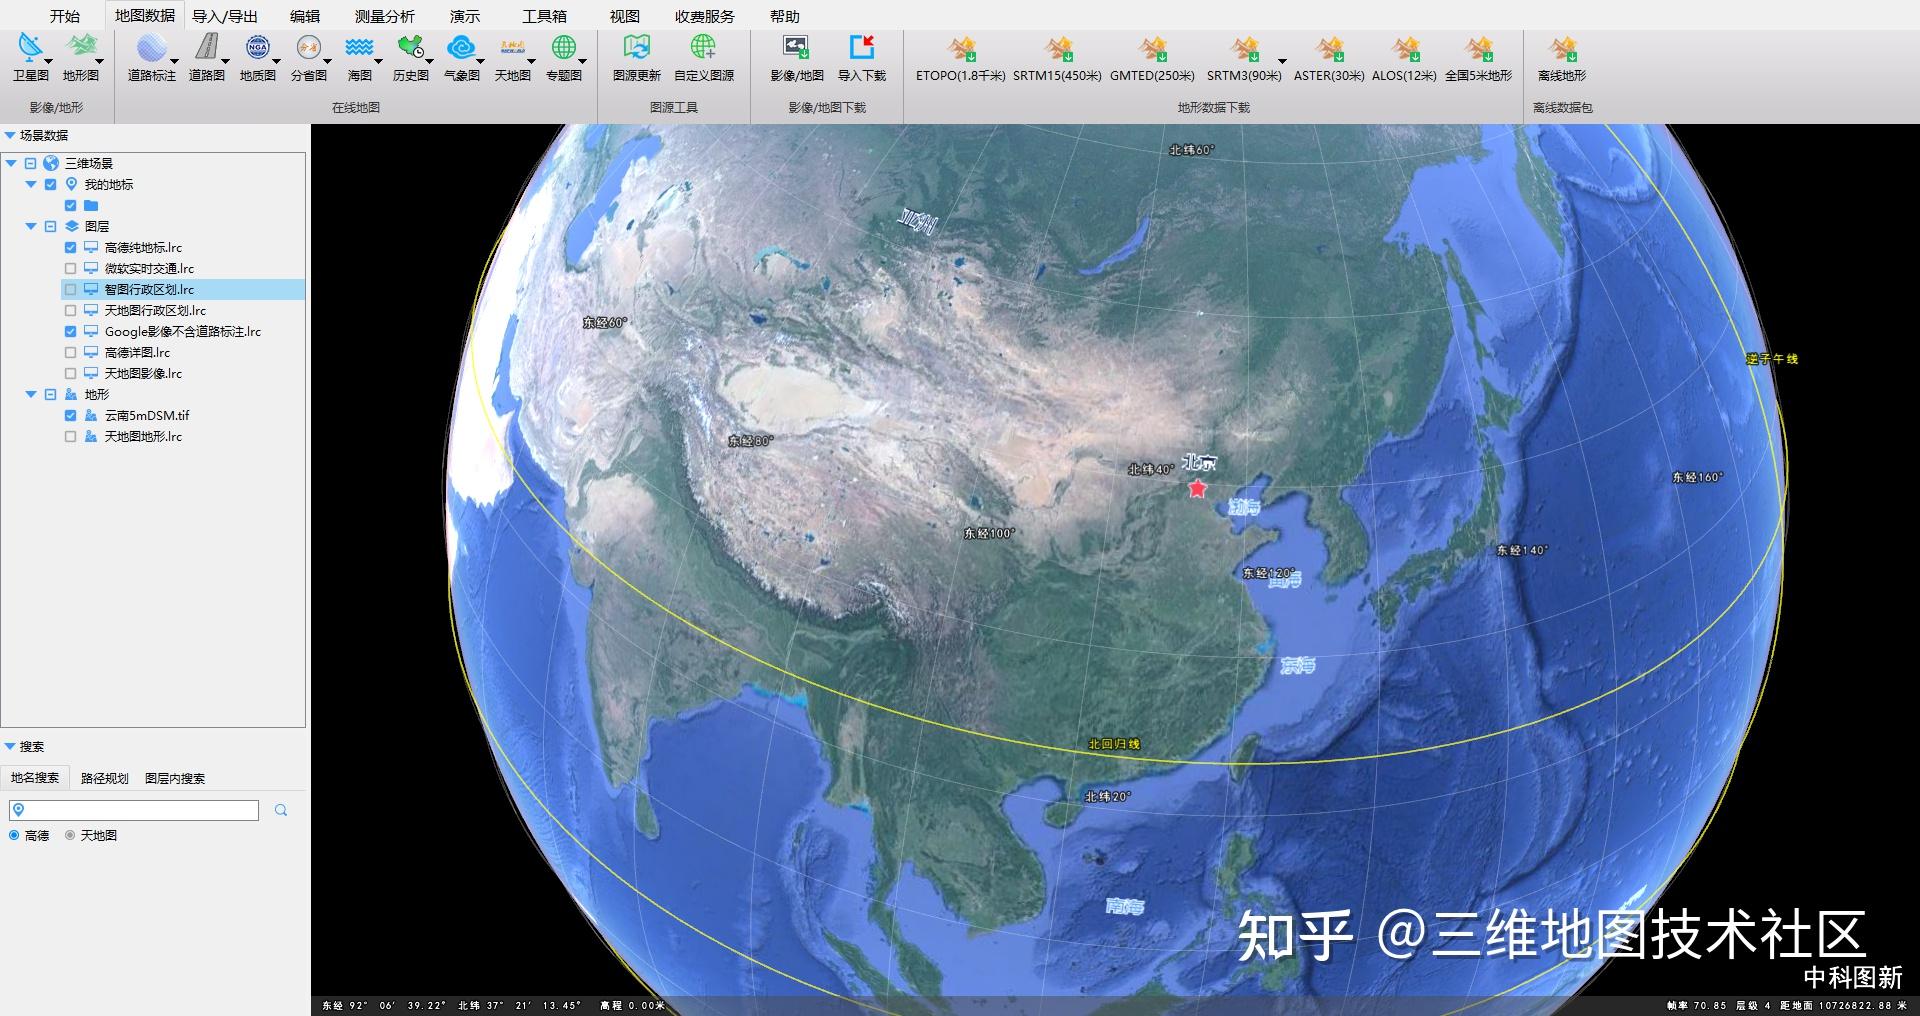 二,电脑桌面端浏览谷歌地图